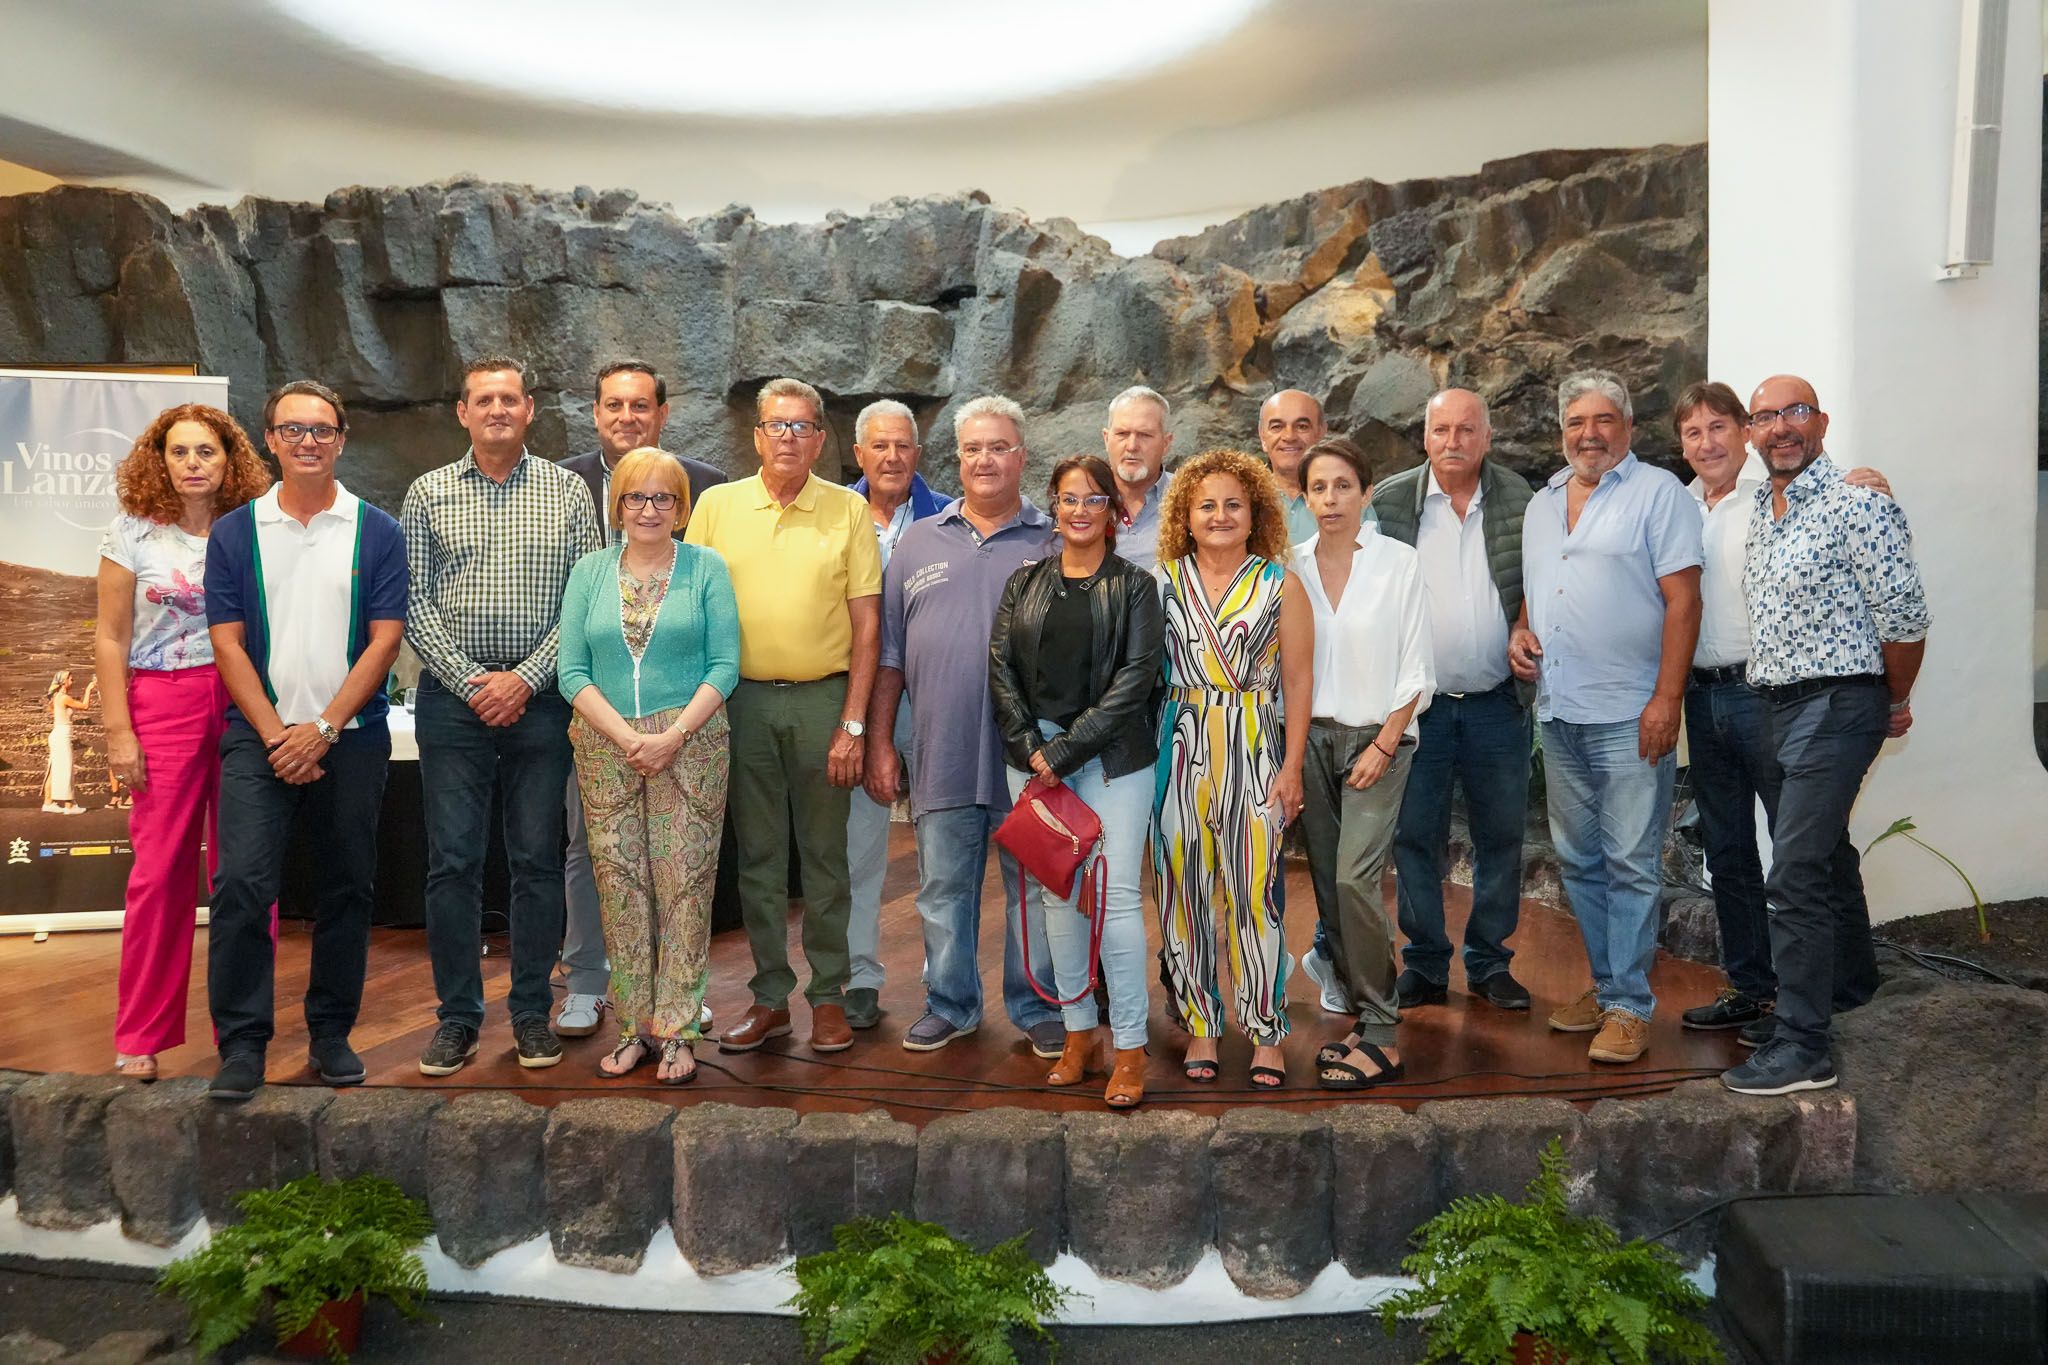 Dirección del Consejo Regulador, vocales y catadores durante el evento de reconocimiento a los vinos de Lanzarote